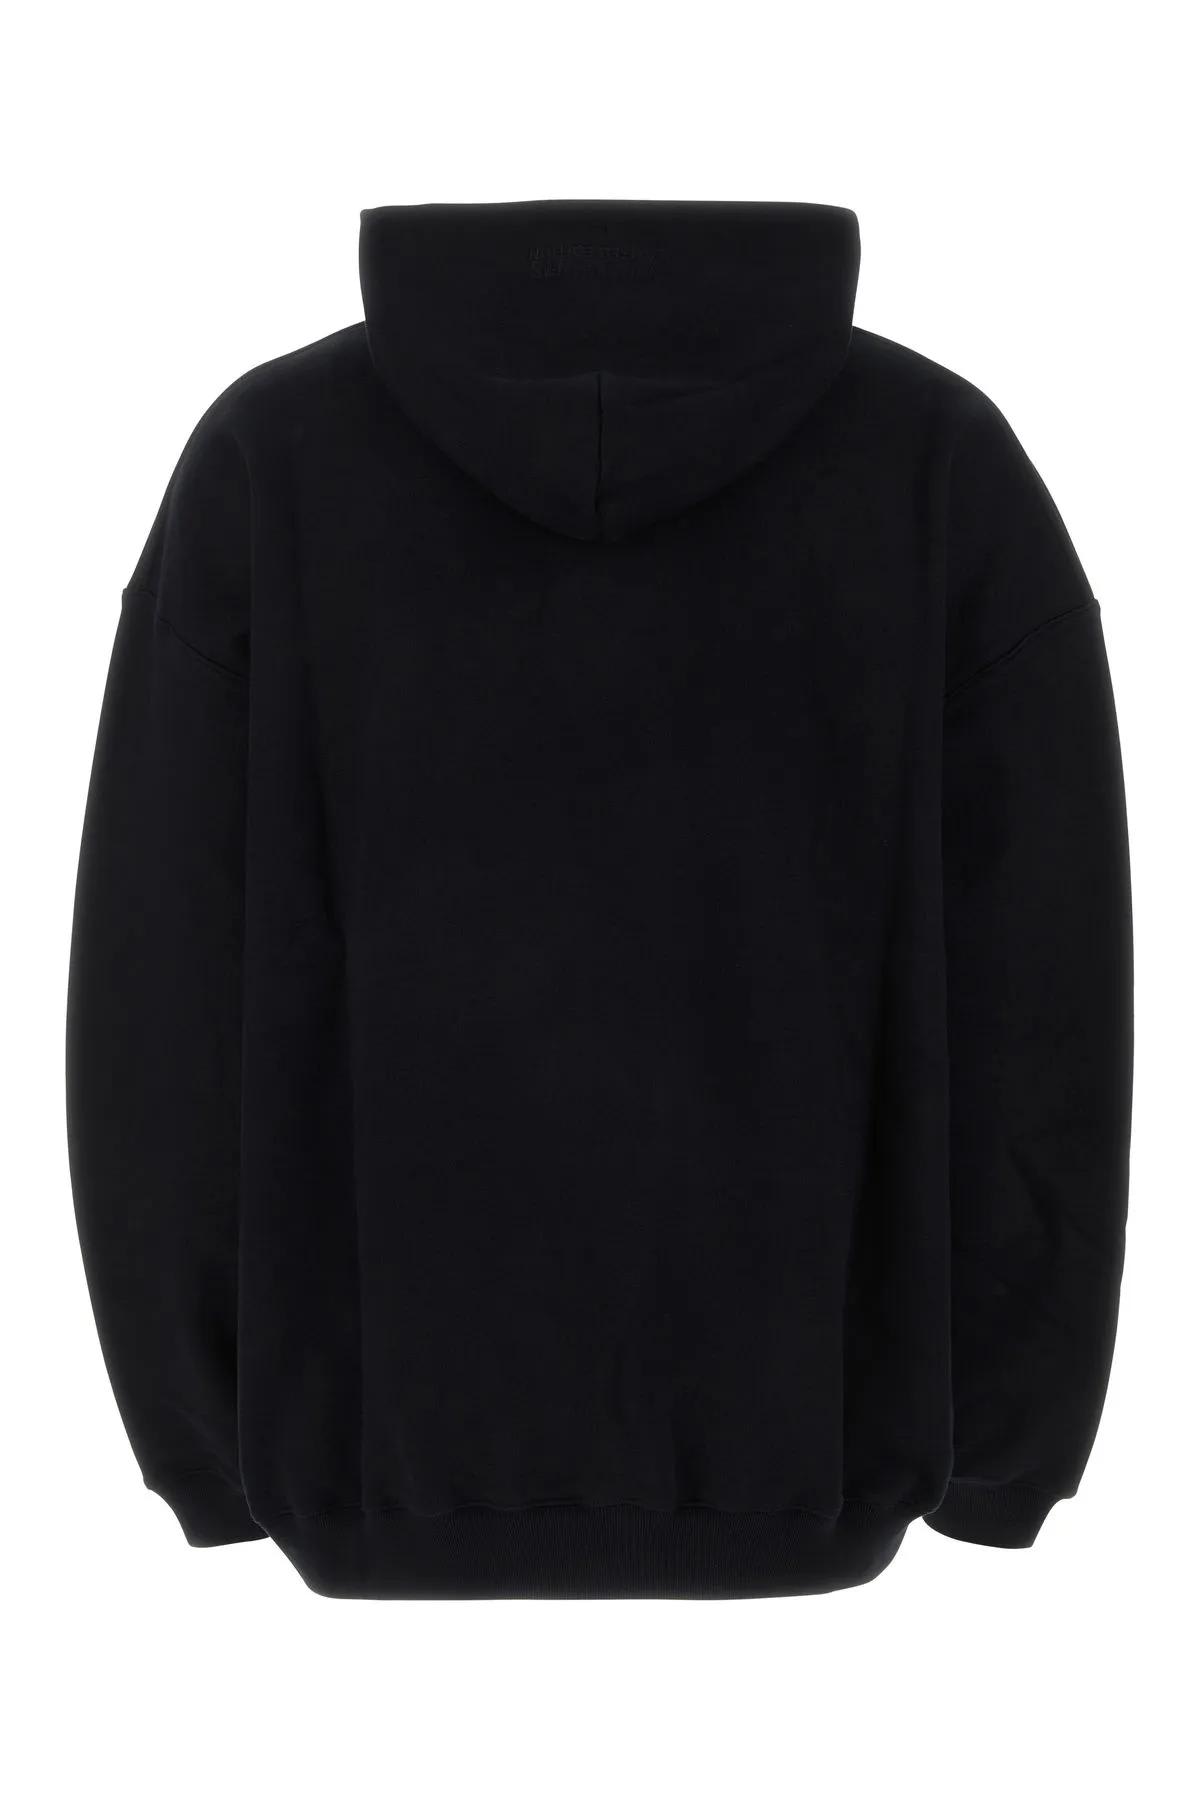 Shop Vetements Black Cotton Blend Oversize Sweatshirt